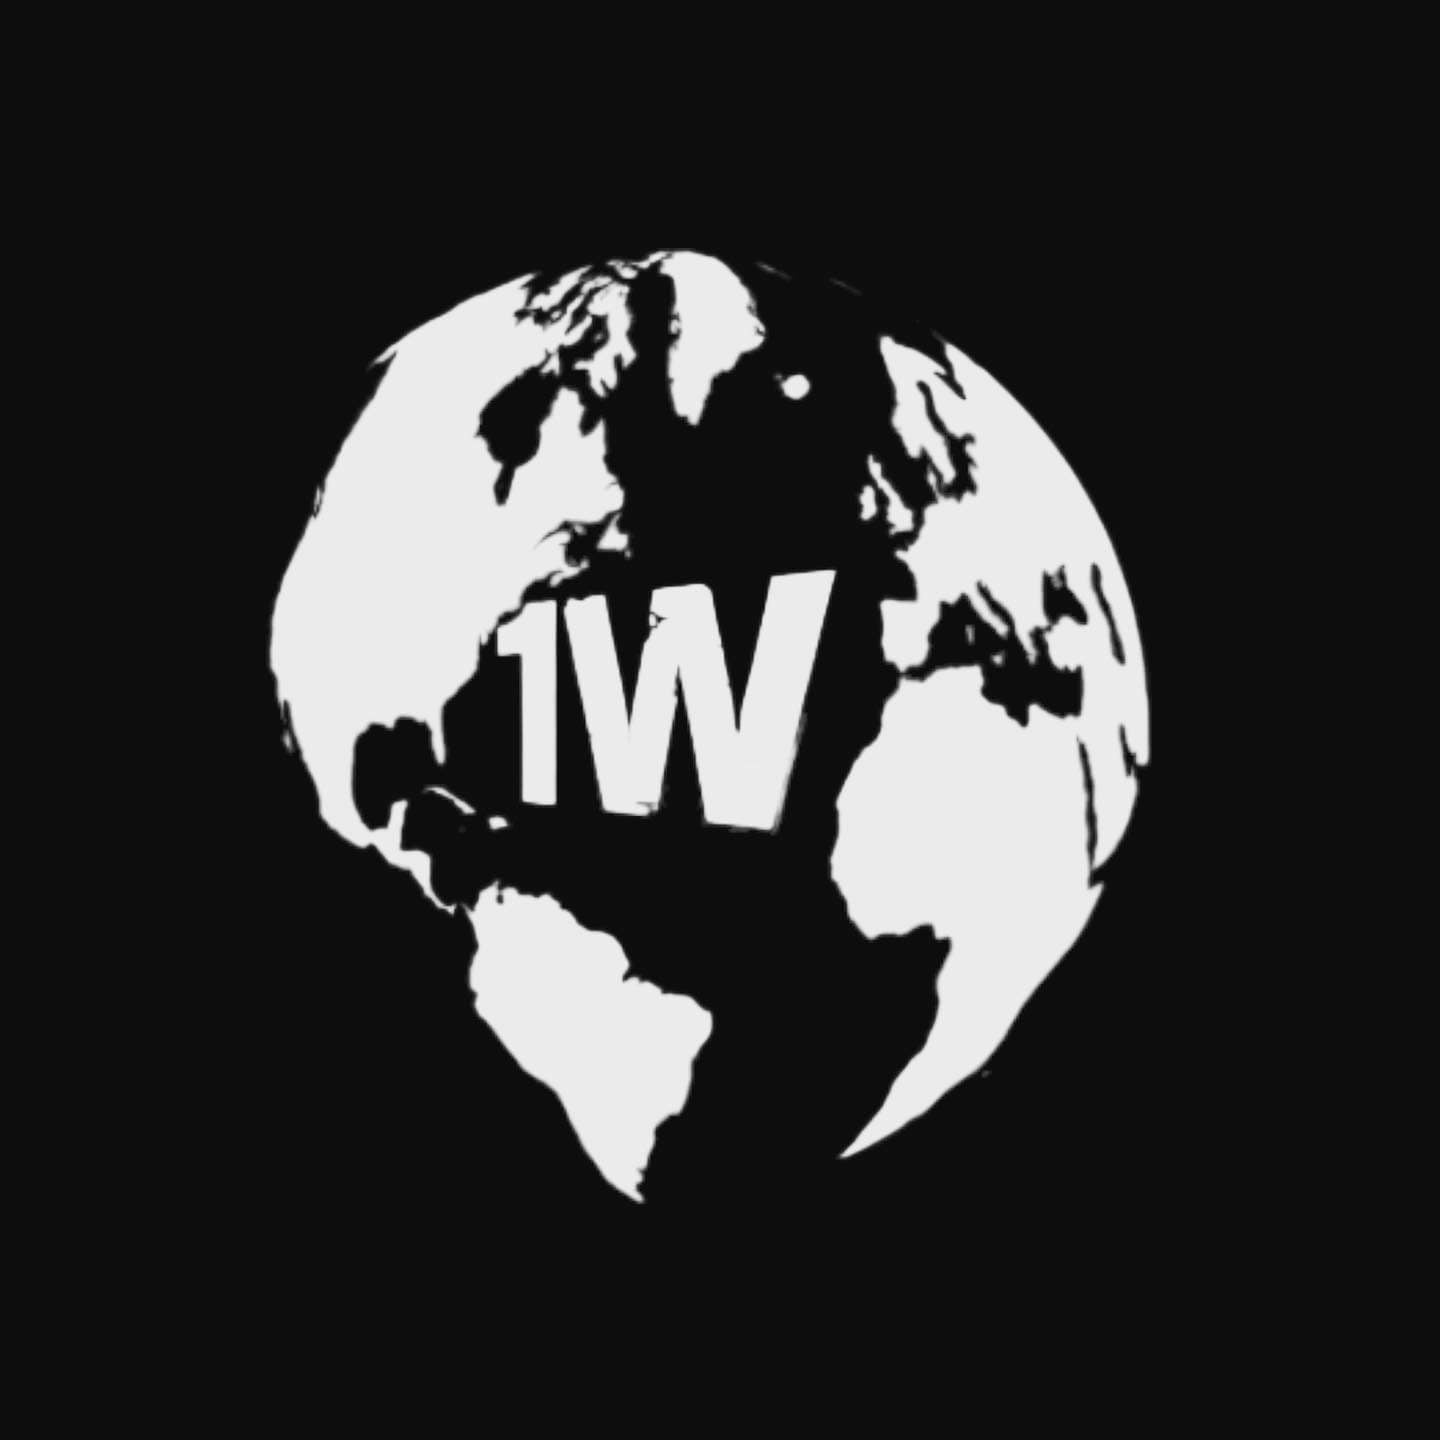 1 West World